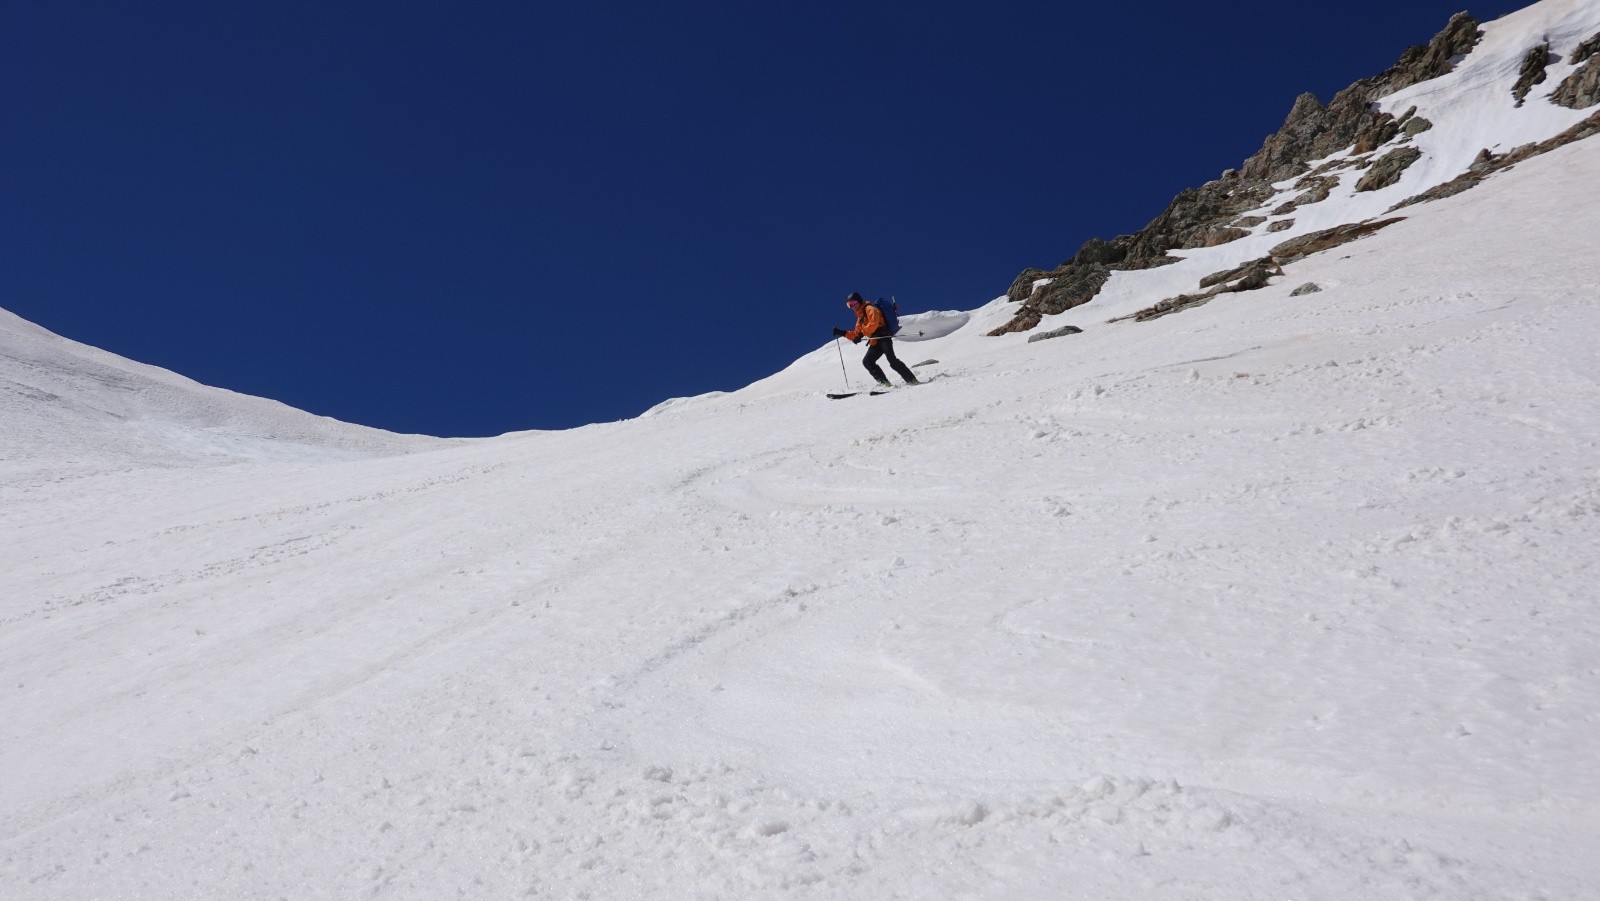 Bonne neige en versant Nord du Colle dei Morti malgré quelques zones en neige dure